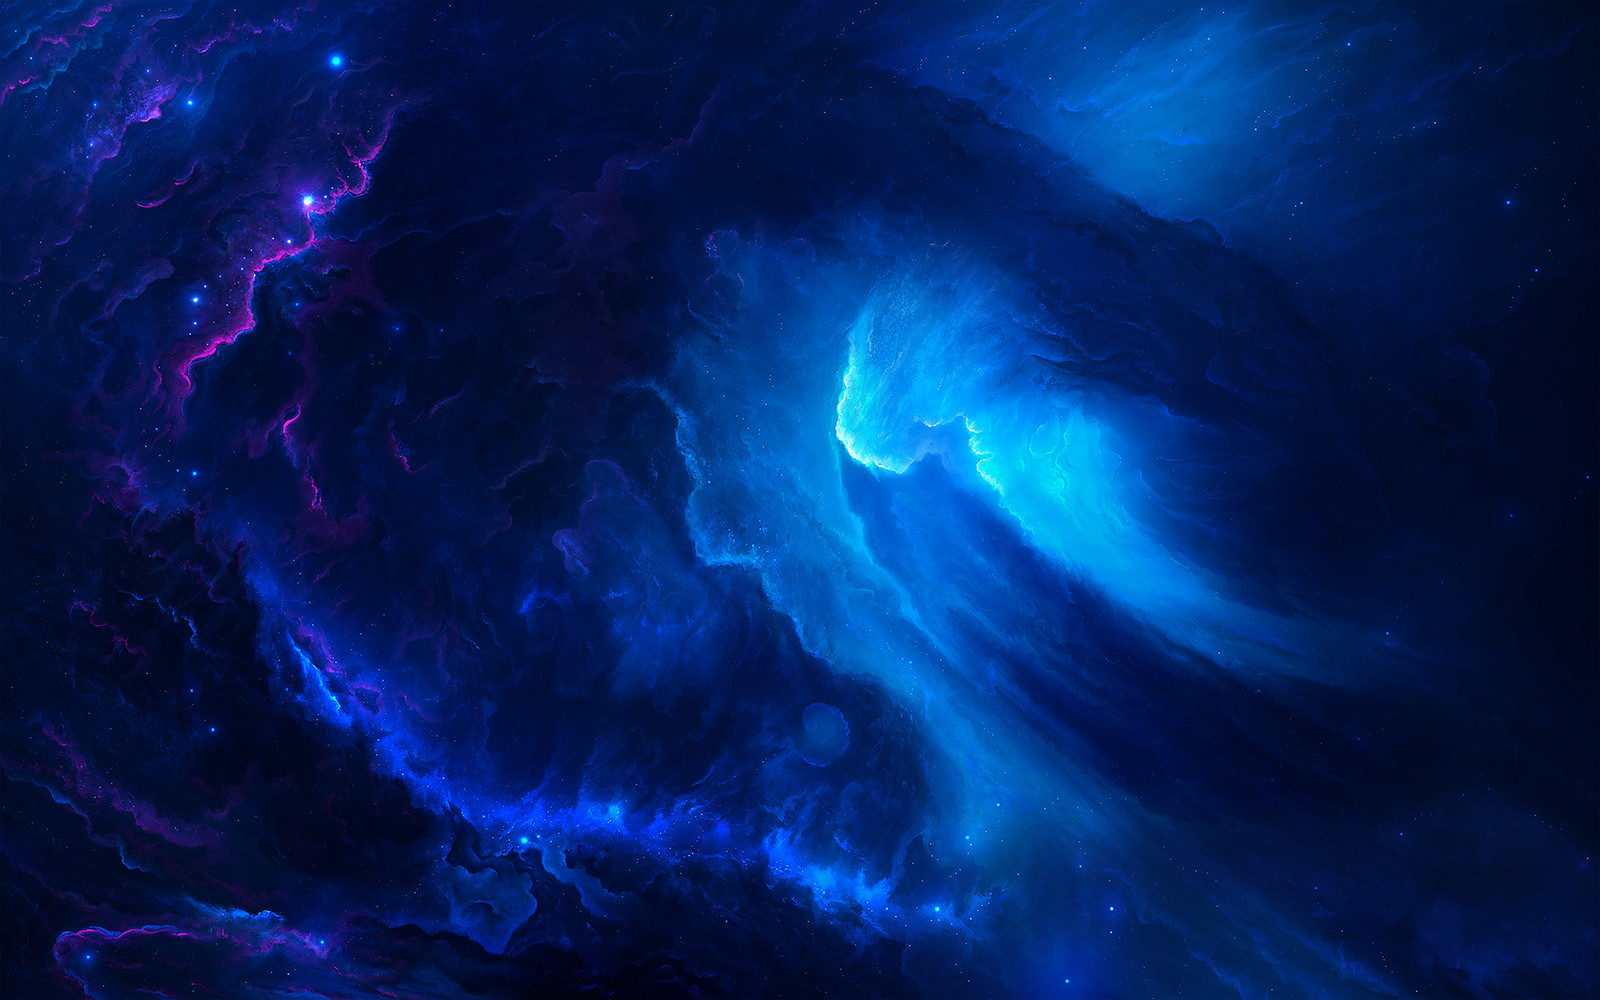 SkyBridge Nebula